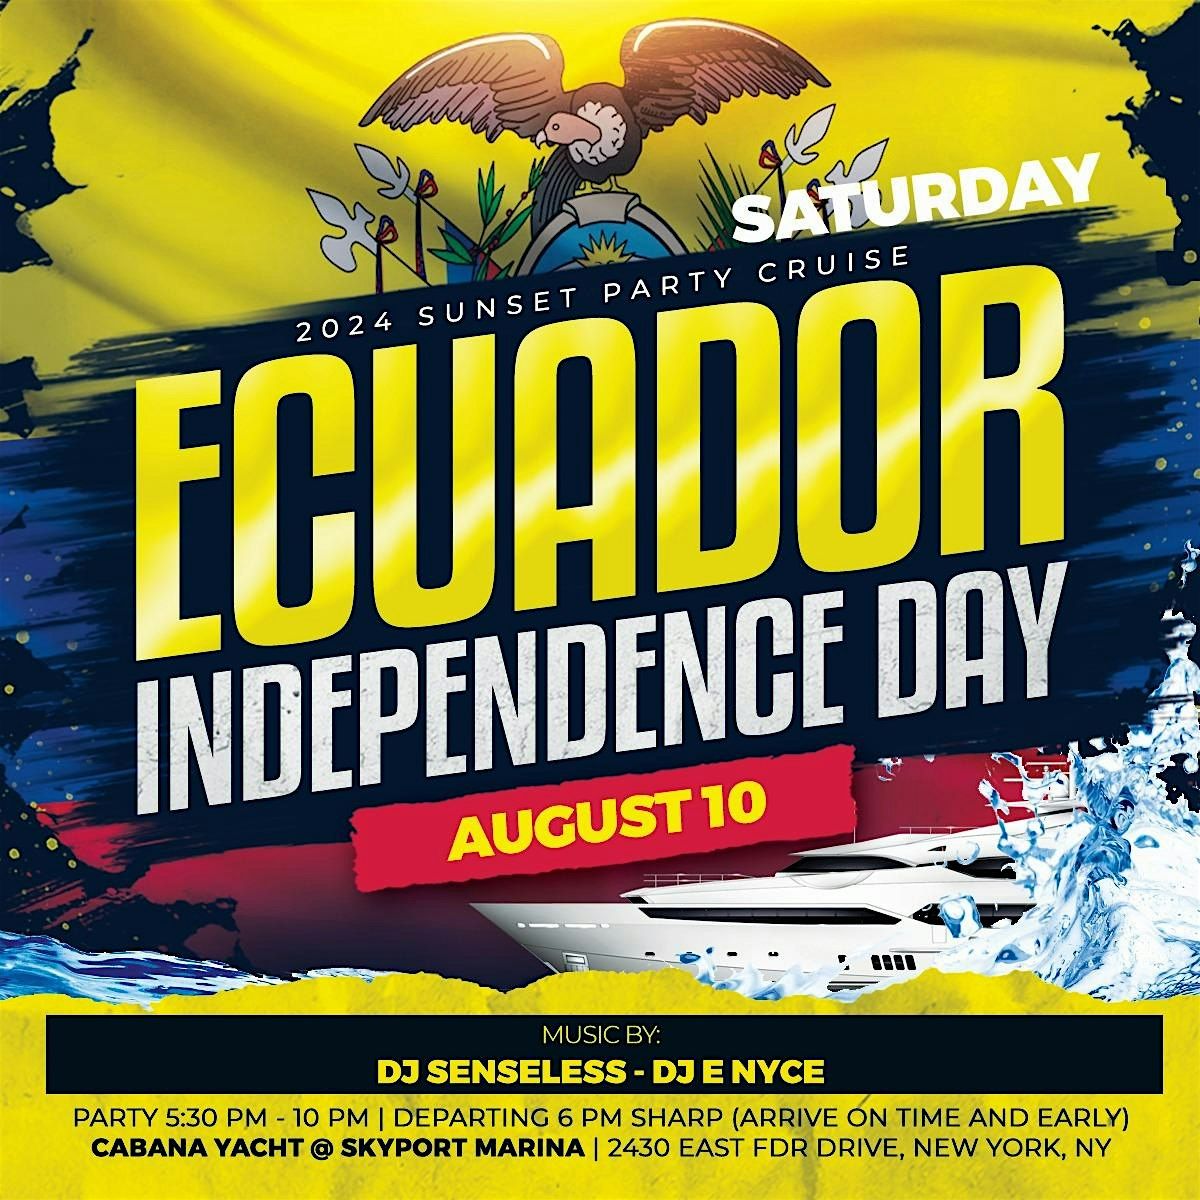 Ecuadorian Independence Sunset Party Cruise At Cabana Yacht